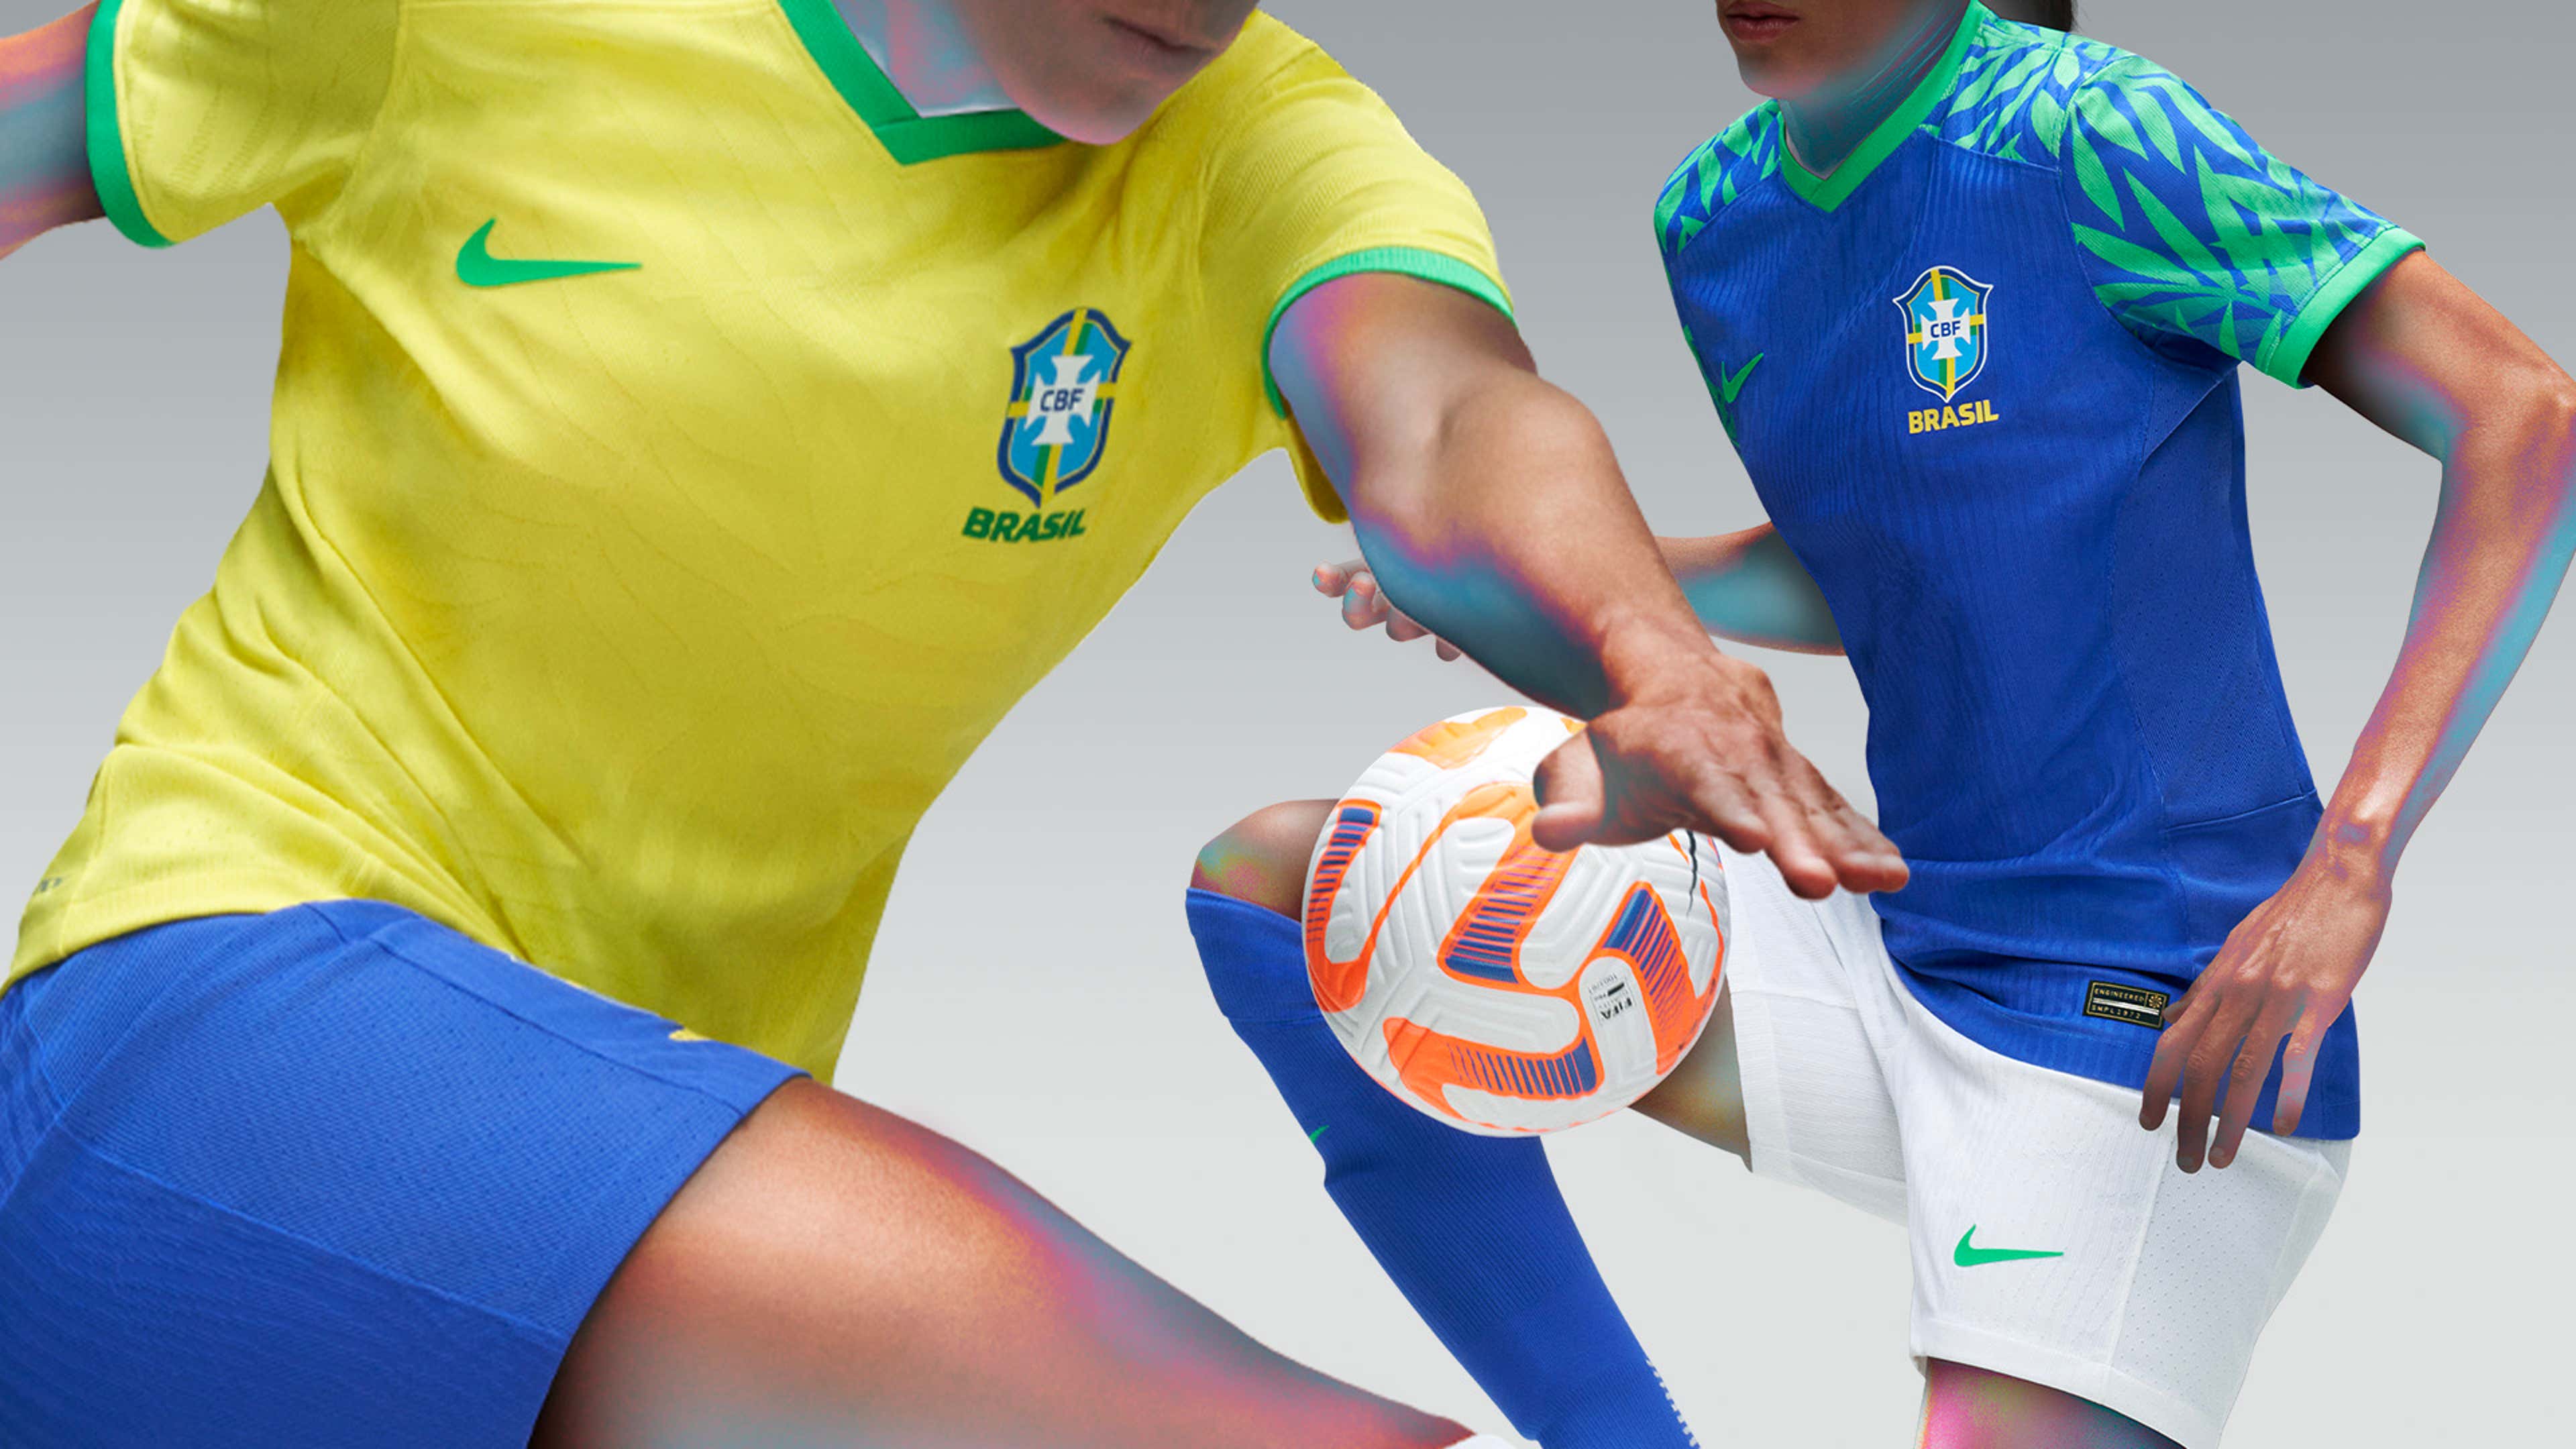 Camisa seleção brasileira